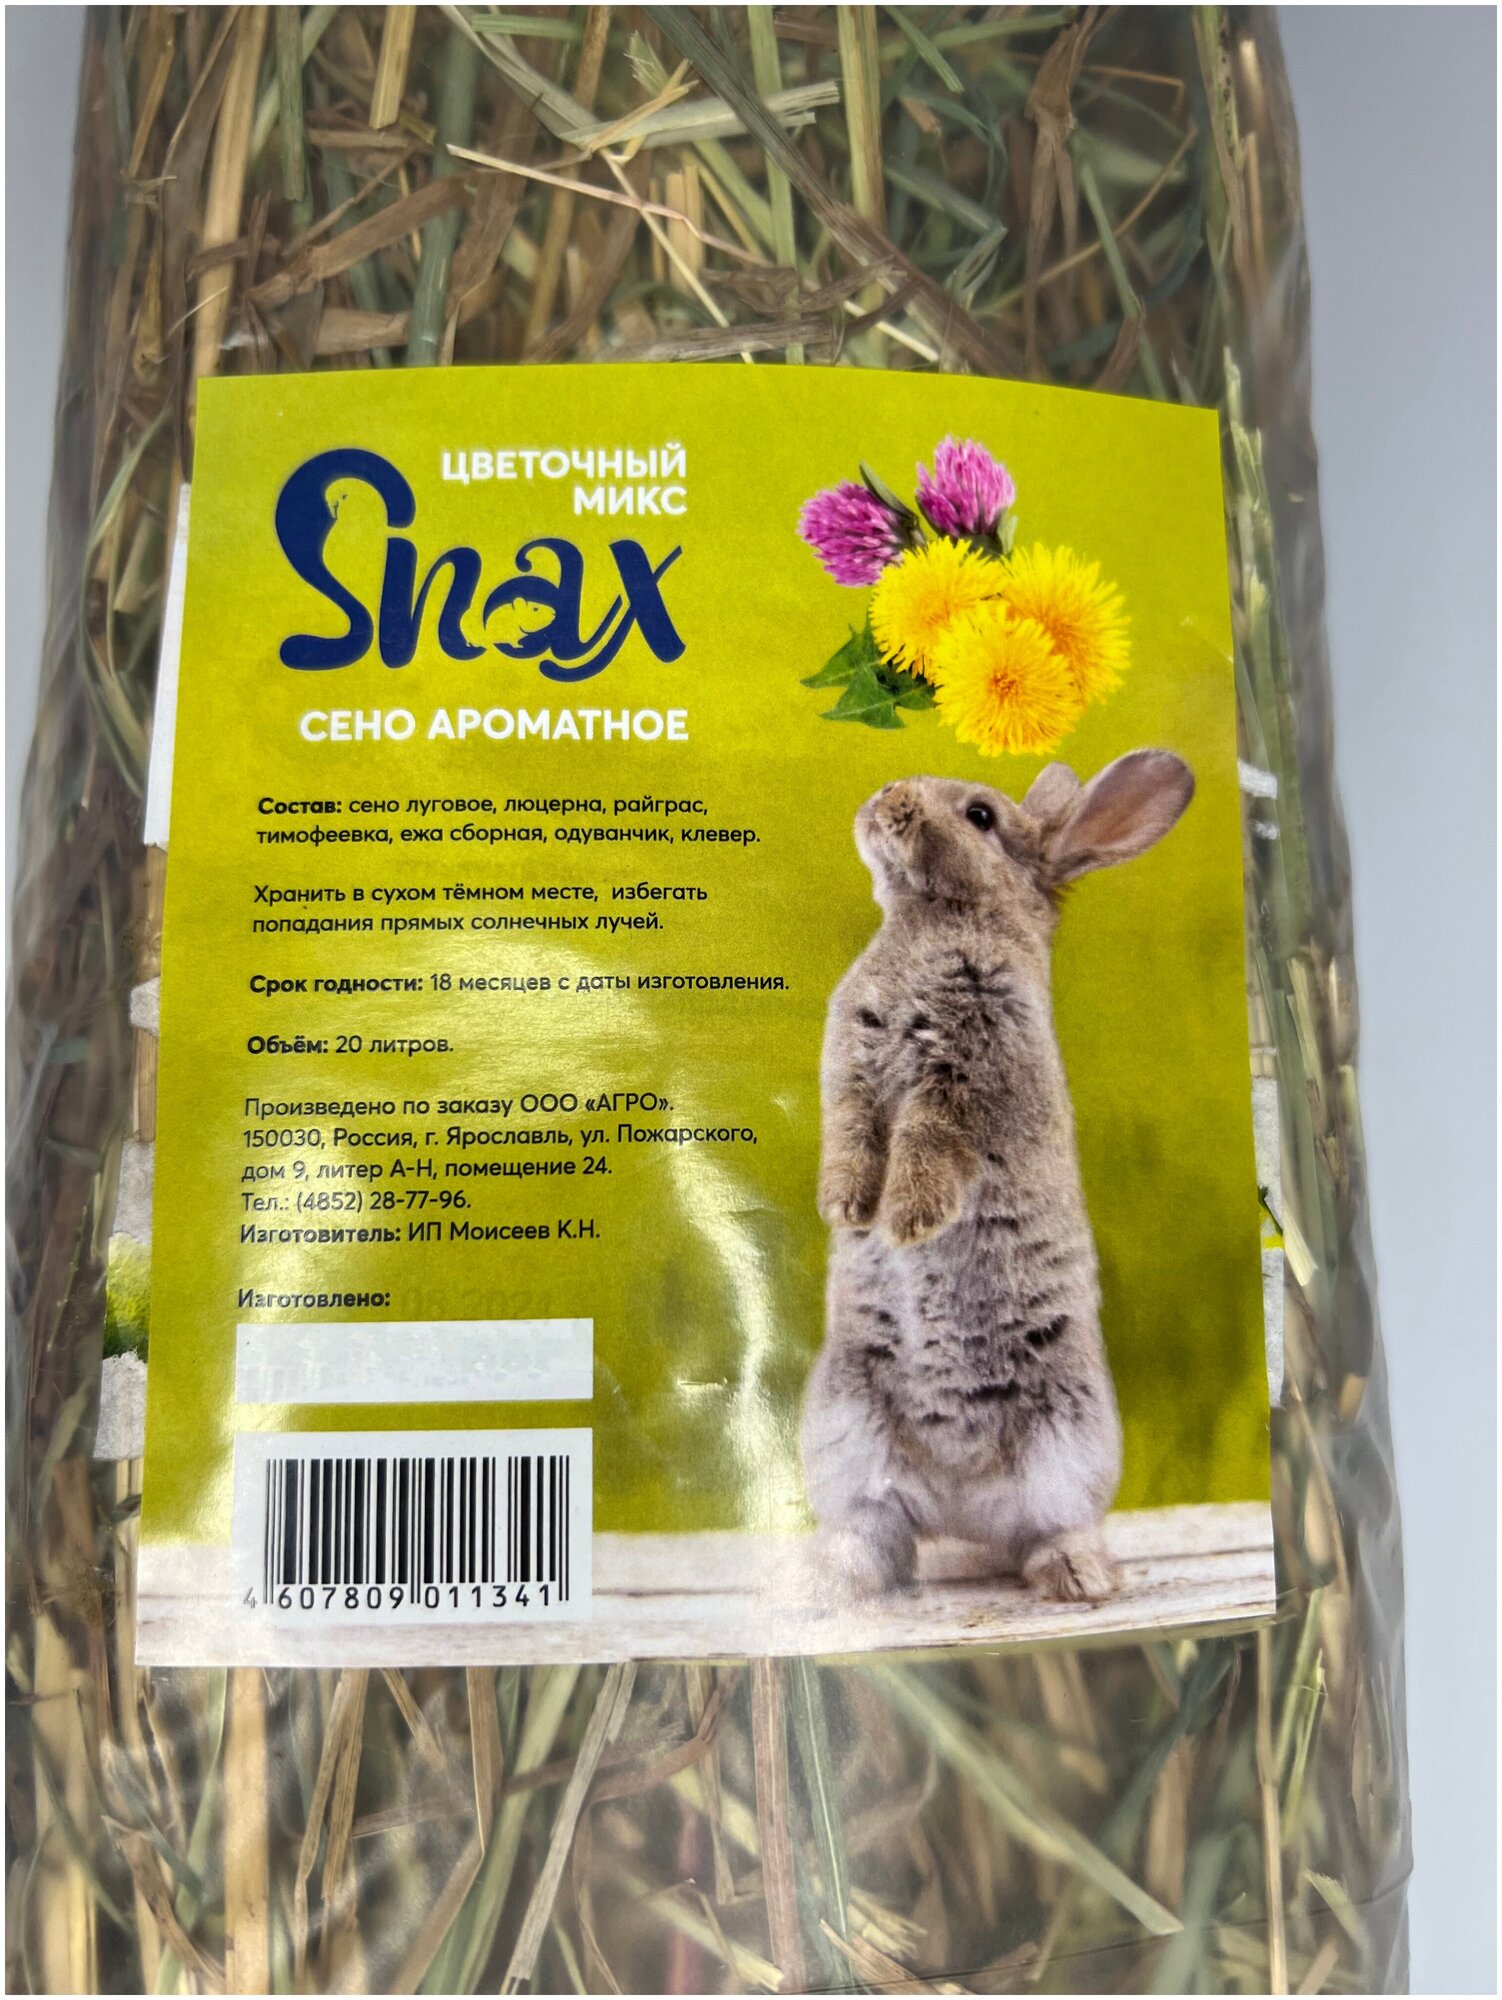 Сено ароматное, цветочный микс, Snax, 20 литров, 600 г - фотография № 3